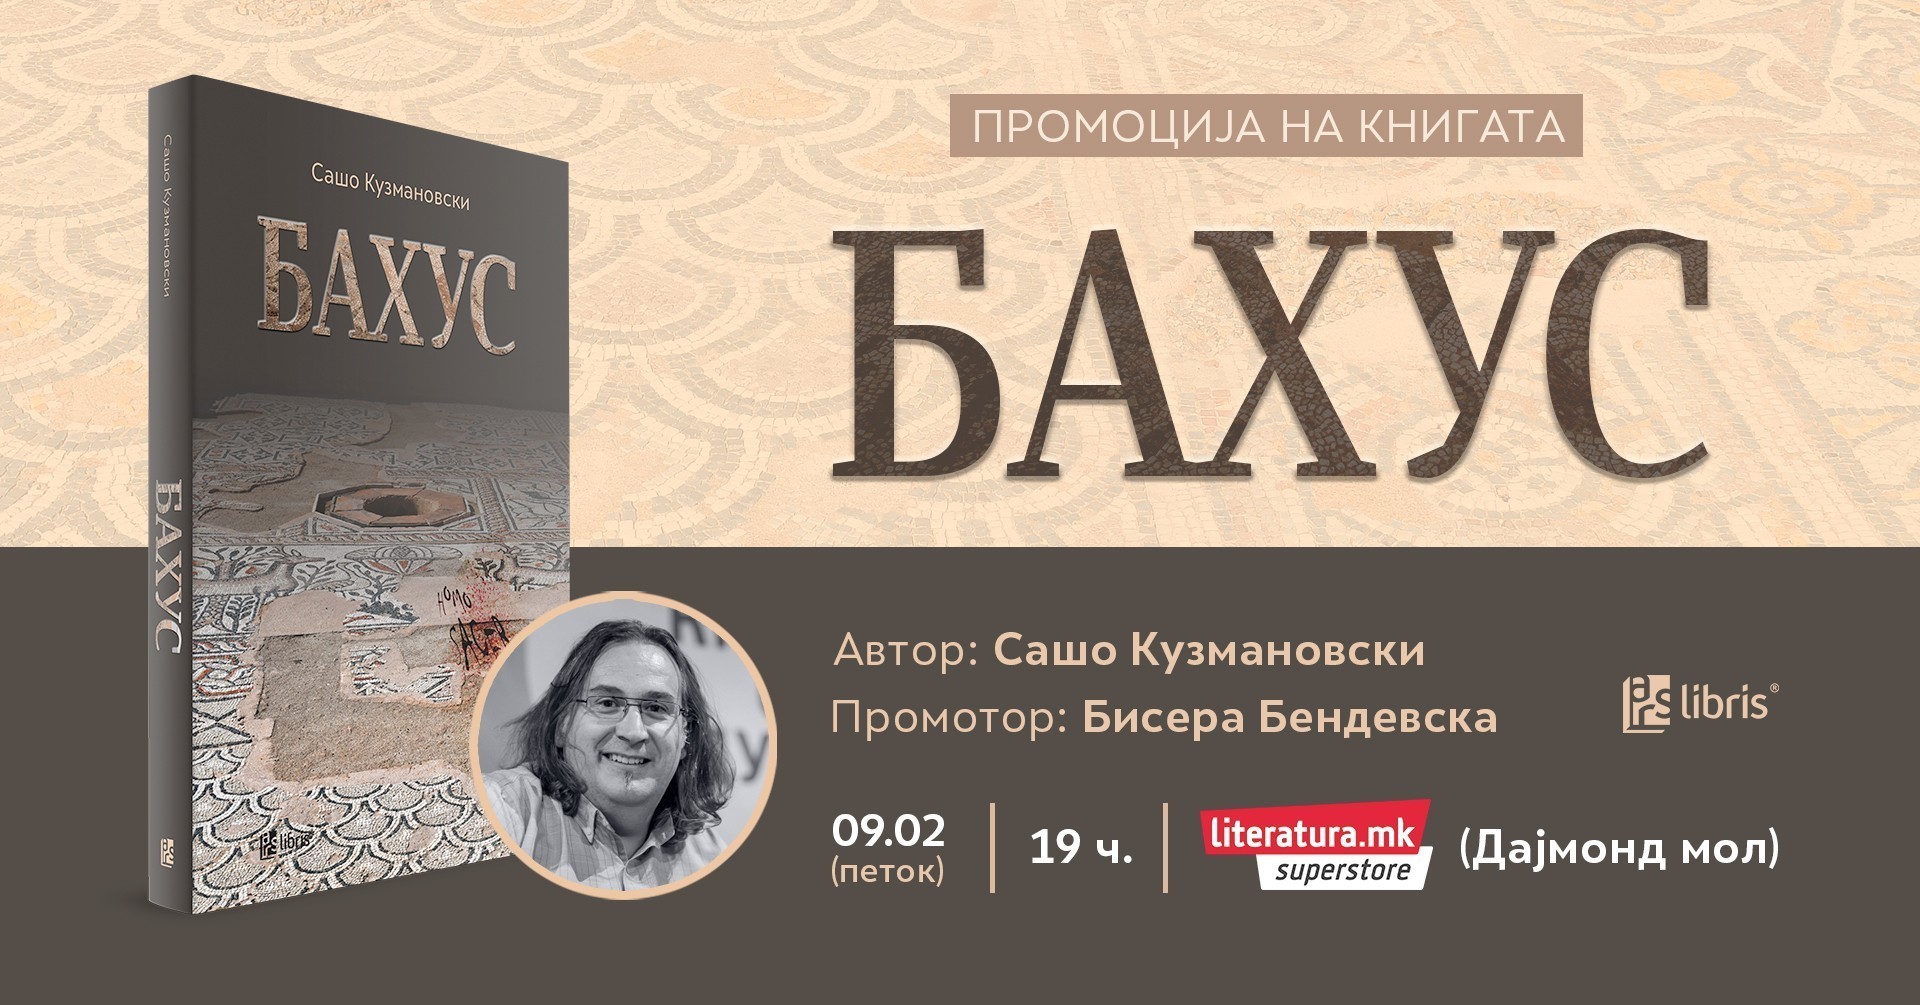 Промоција на крими-трилерот „Бахус“ од Сашо Кузмановски